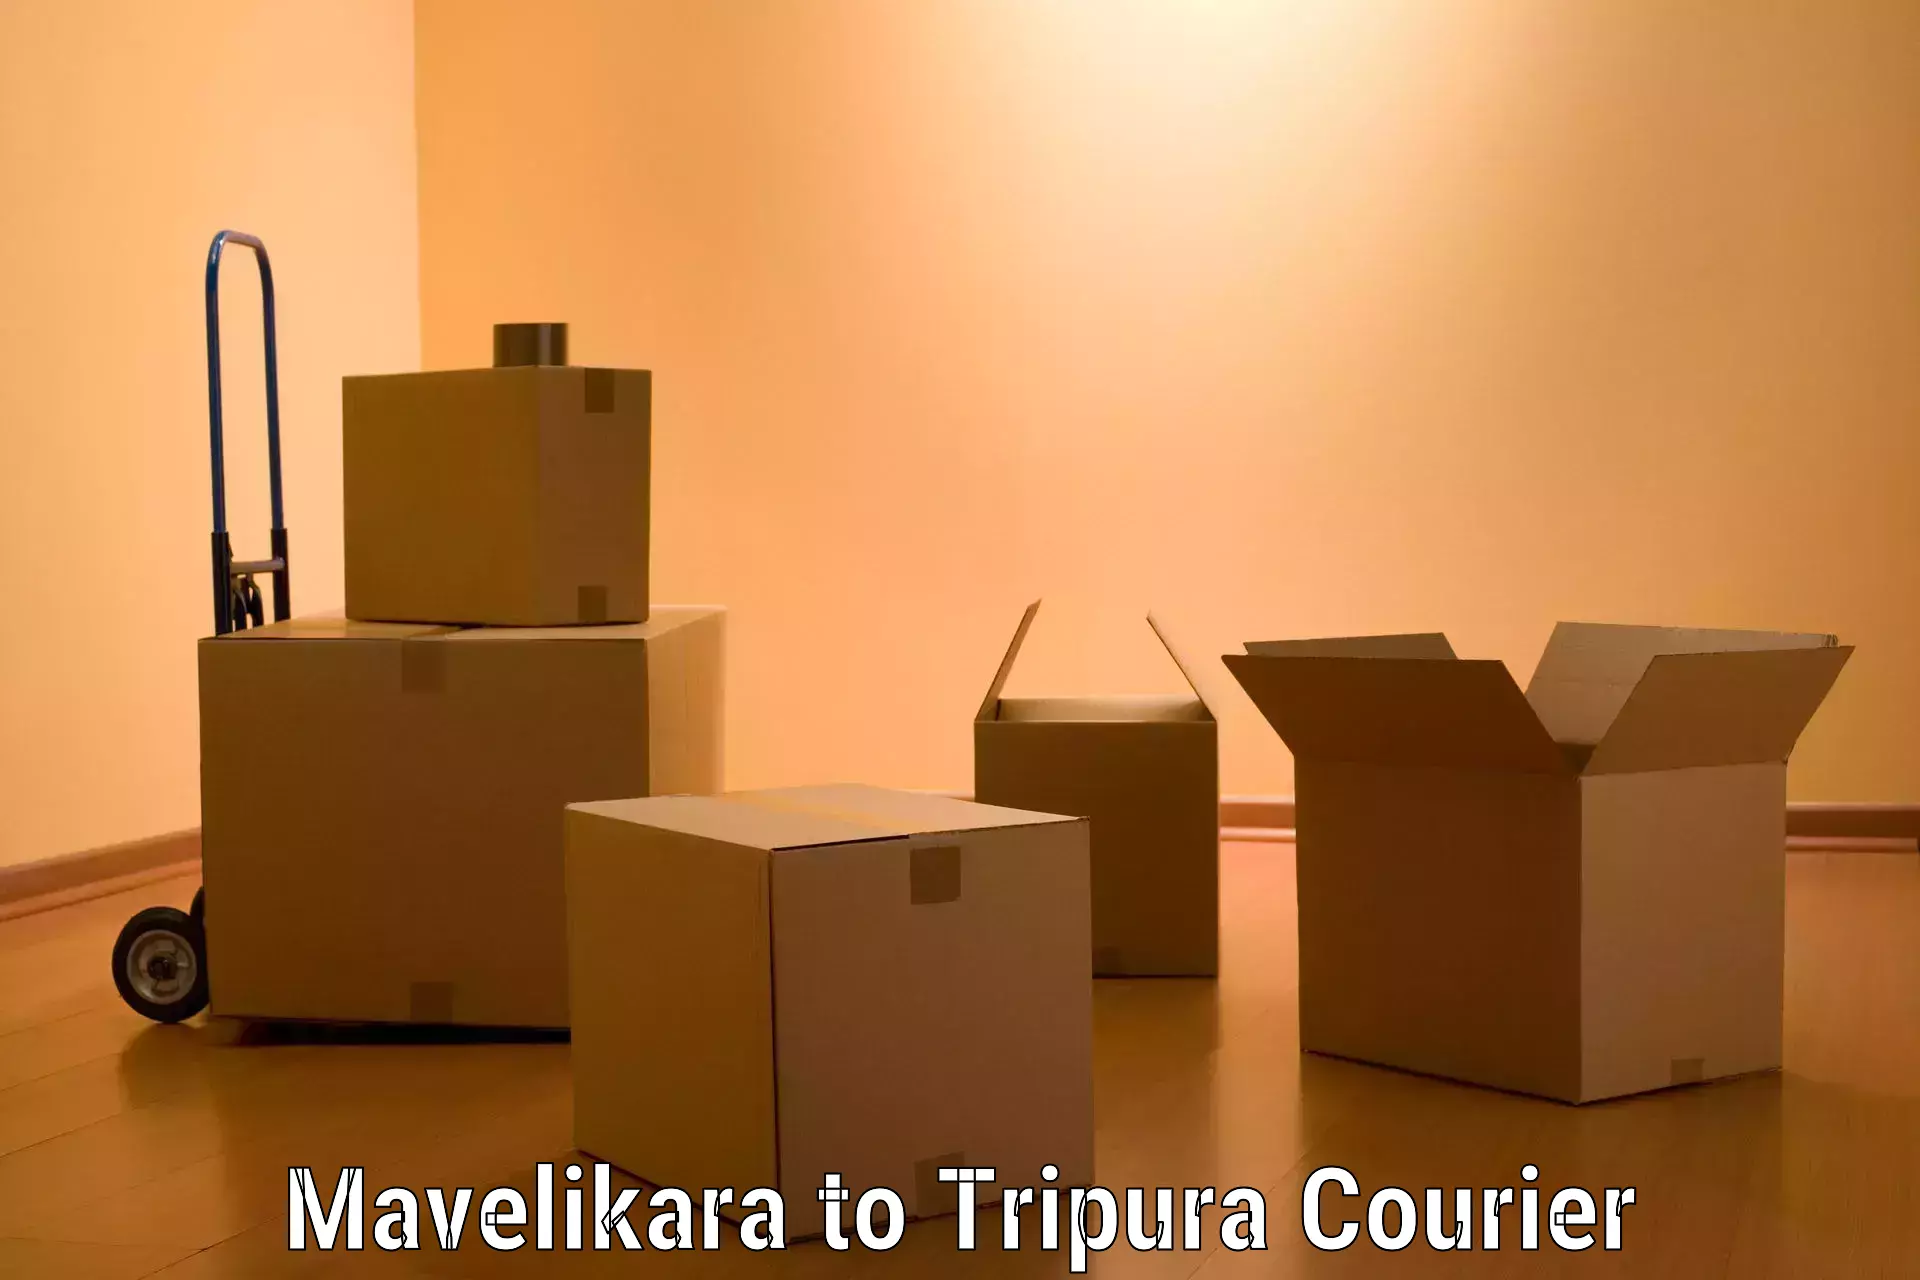 Professional furniture movers Mavelikara to Udaipur Tripura